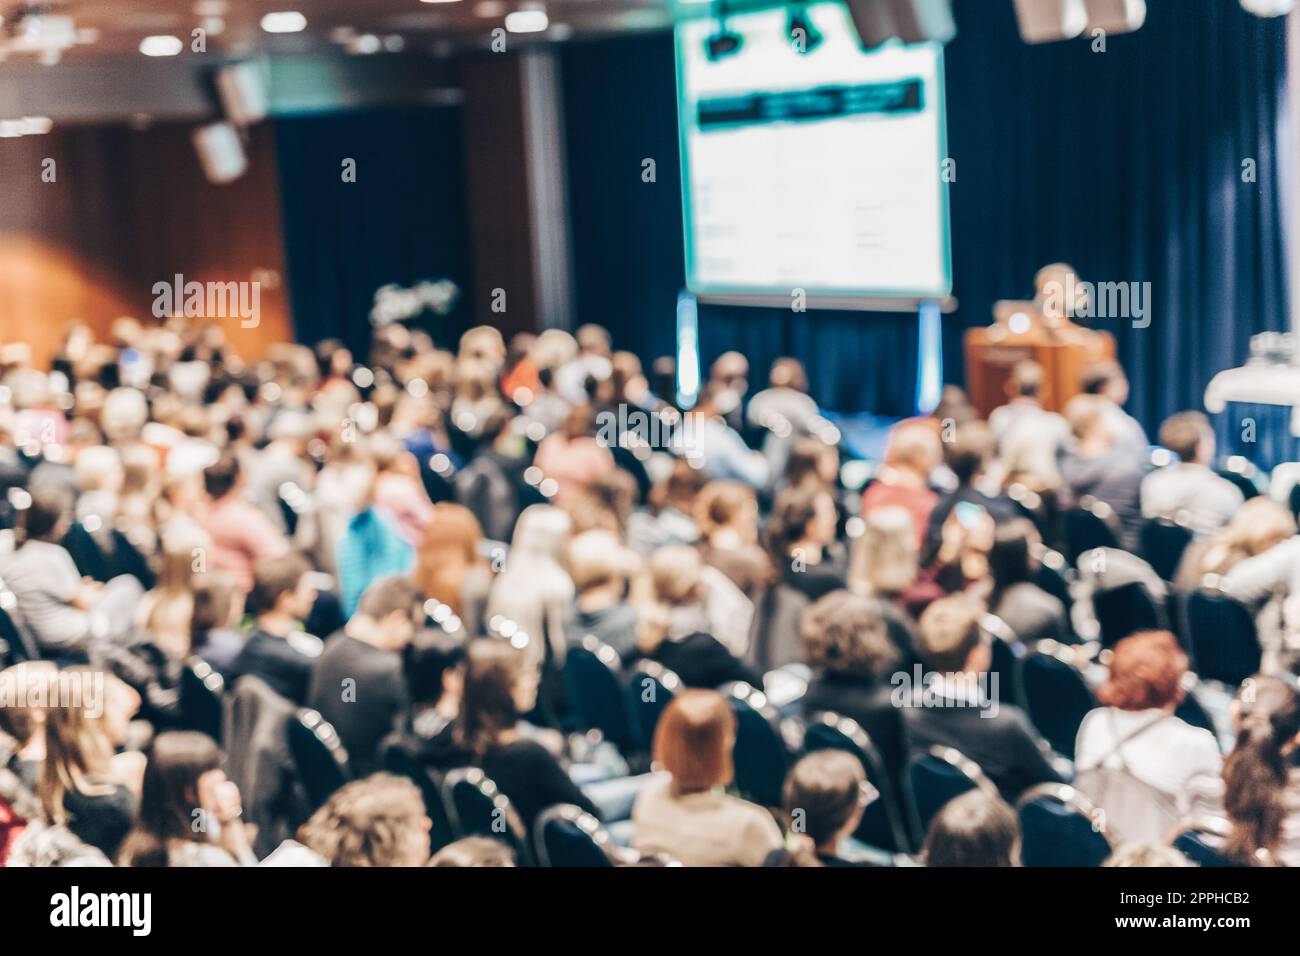 Blured immagine del pubblico in sala conferenza frequentando simposio di business. Foto Stock